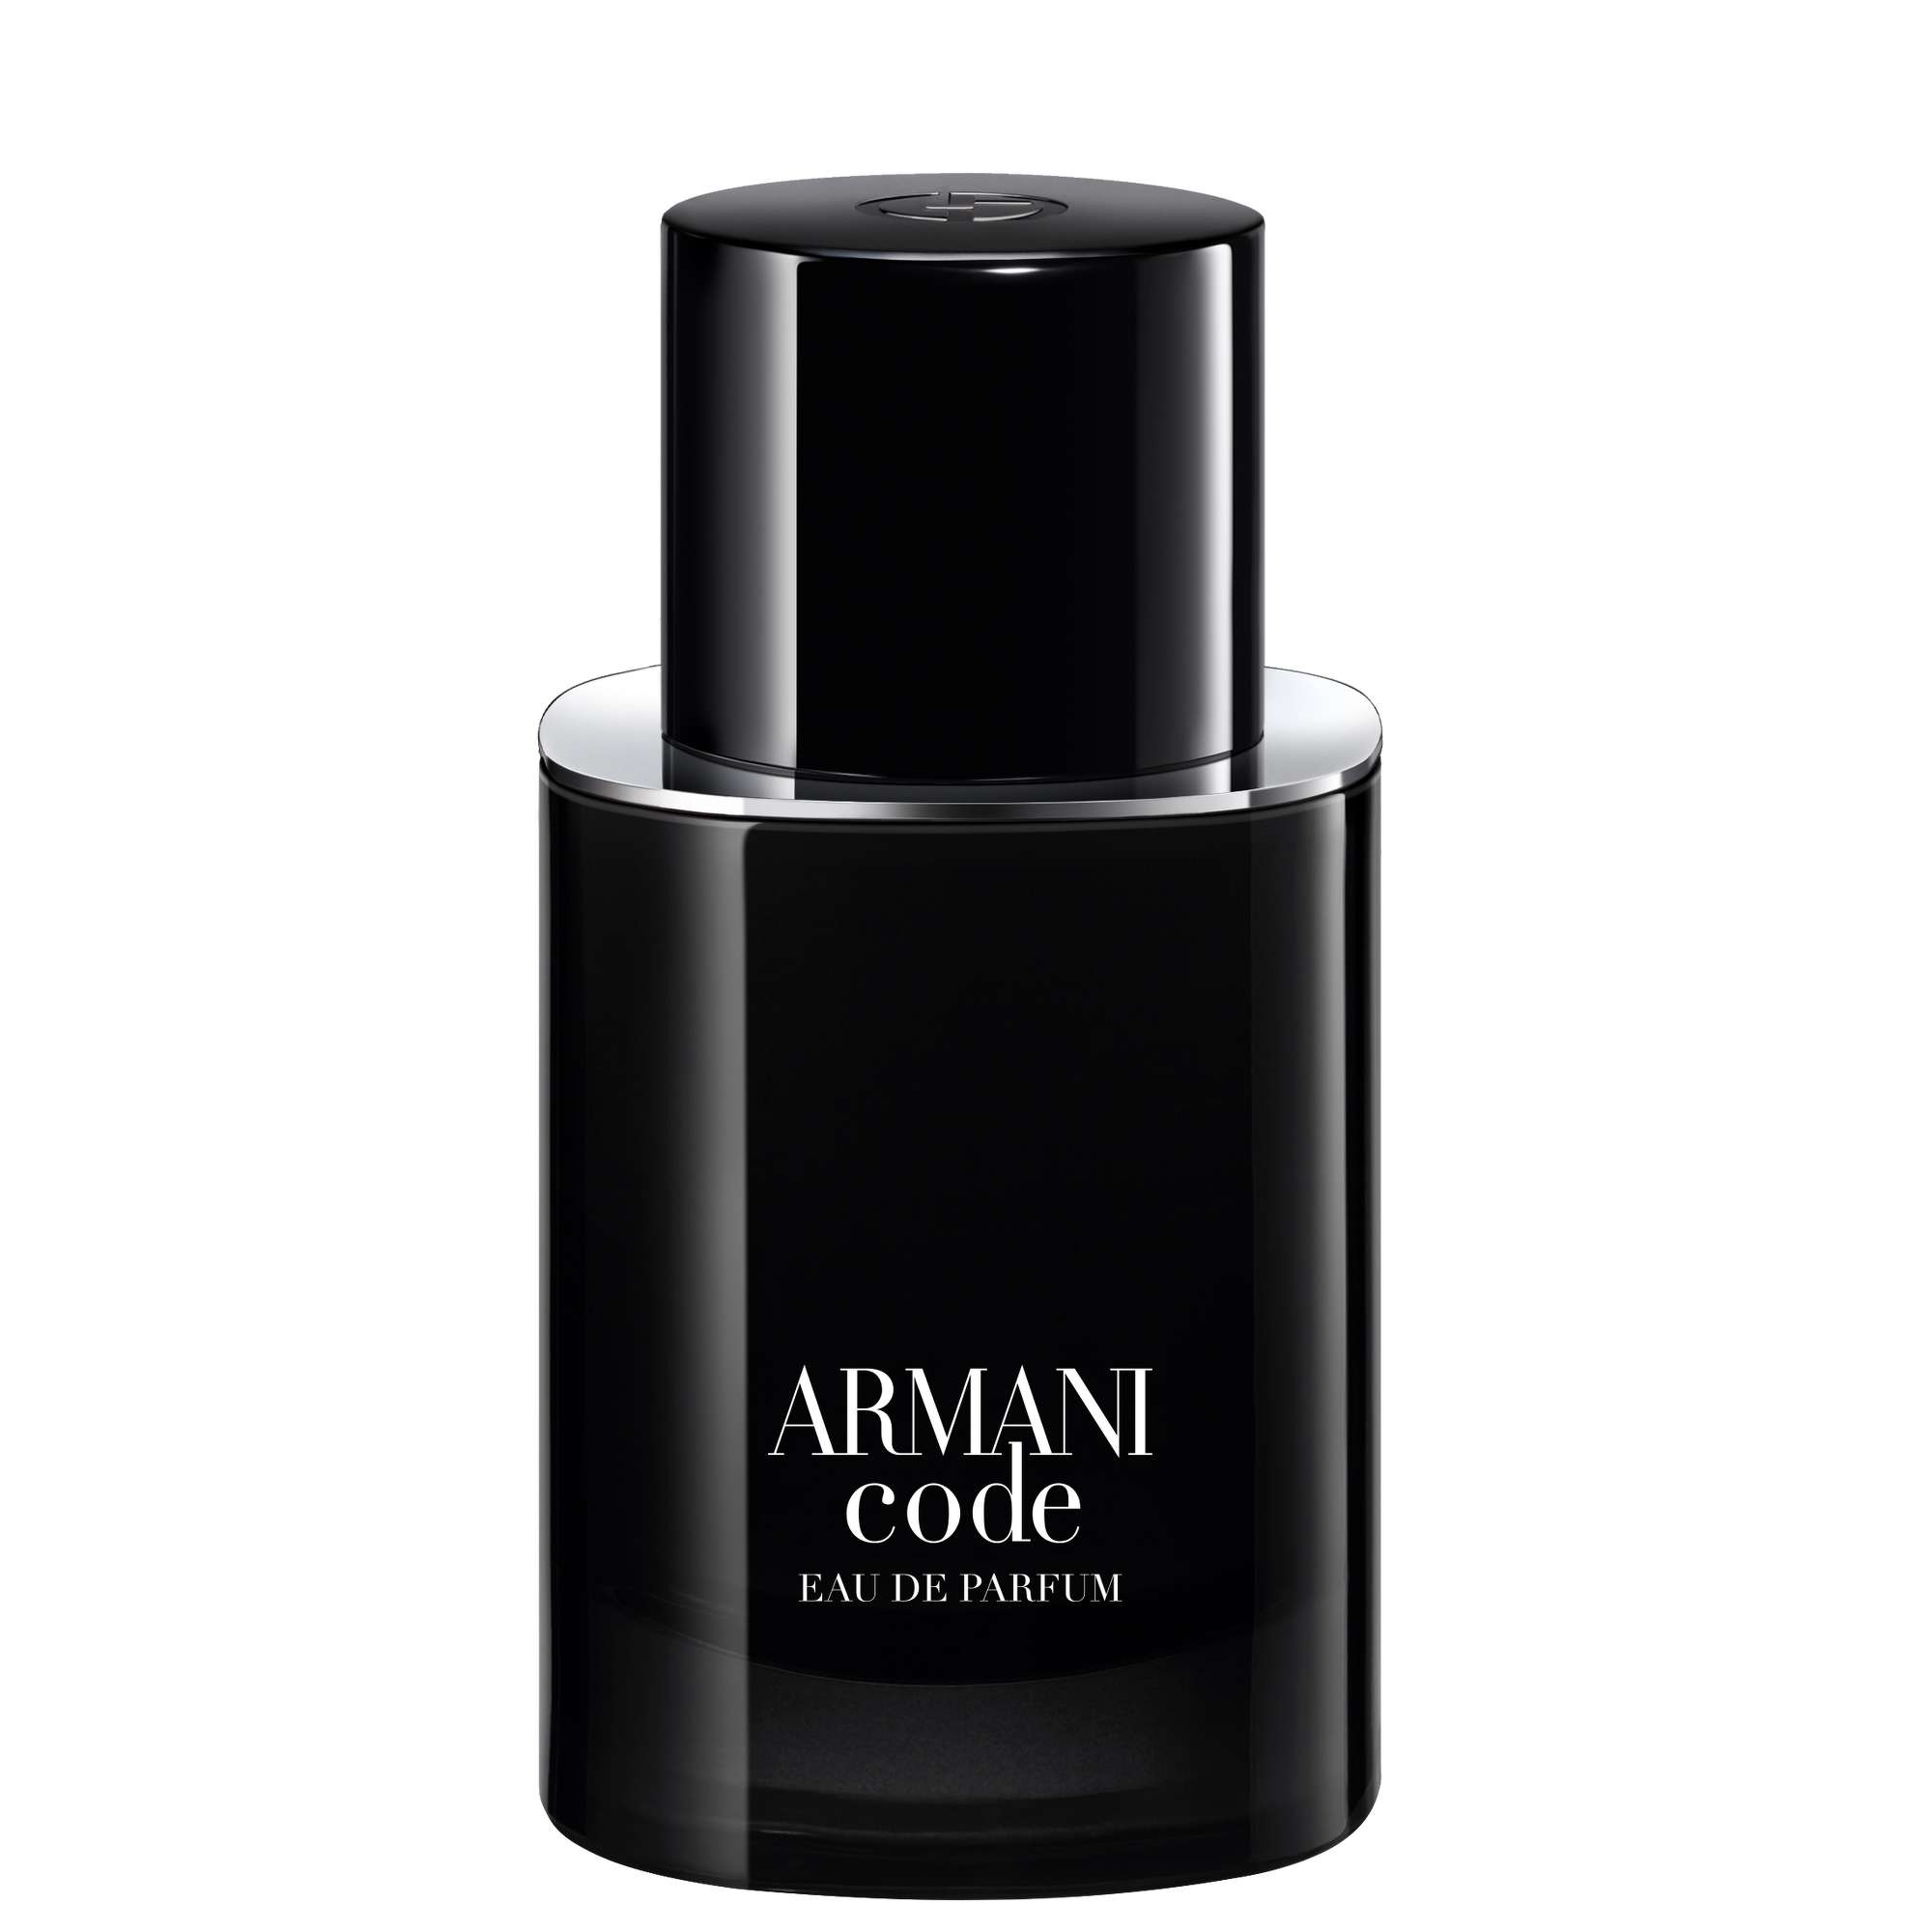 Image of Armani Code Eau de Parfum Pour Homme Eau de Parfum Spray 50ml